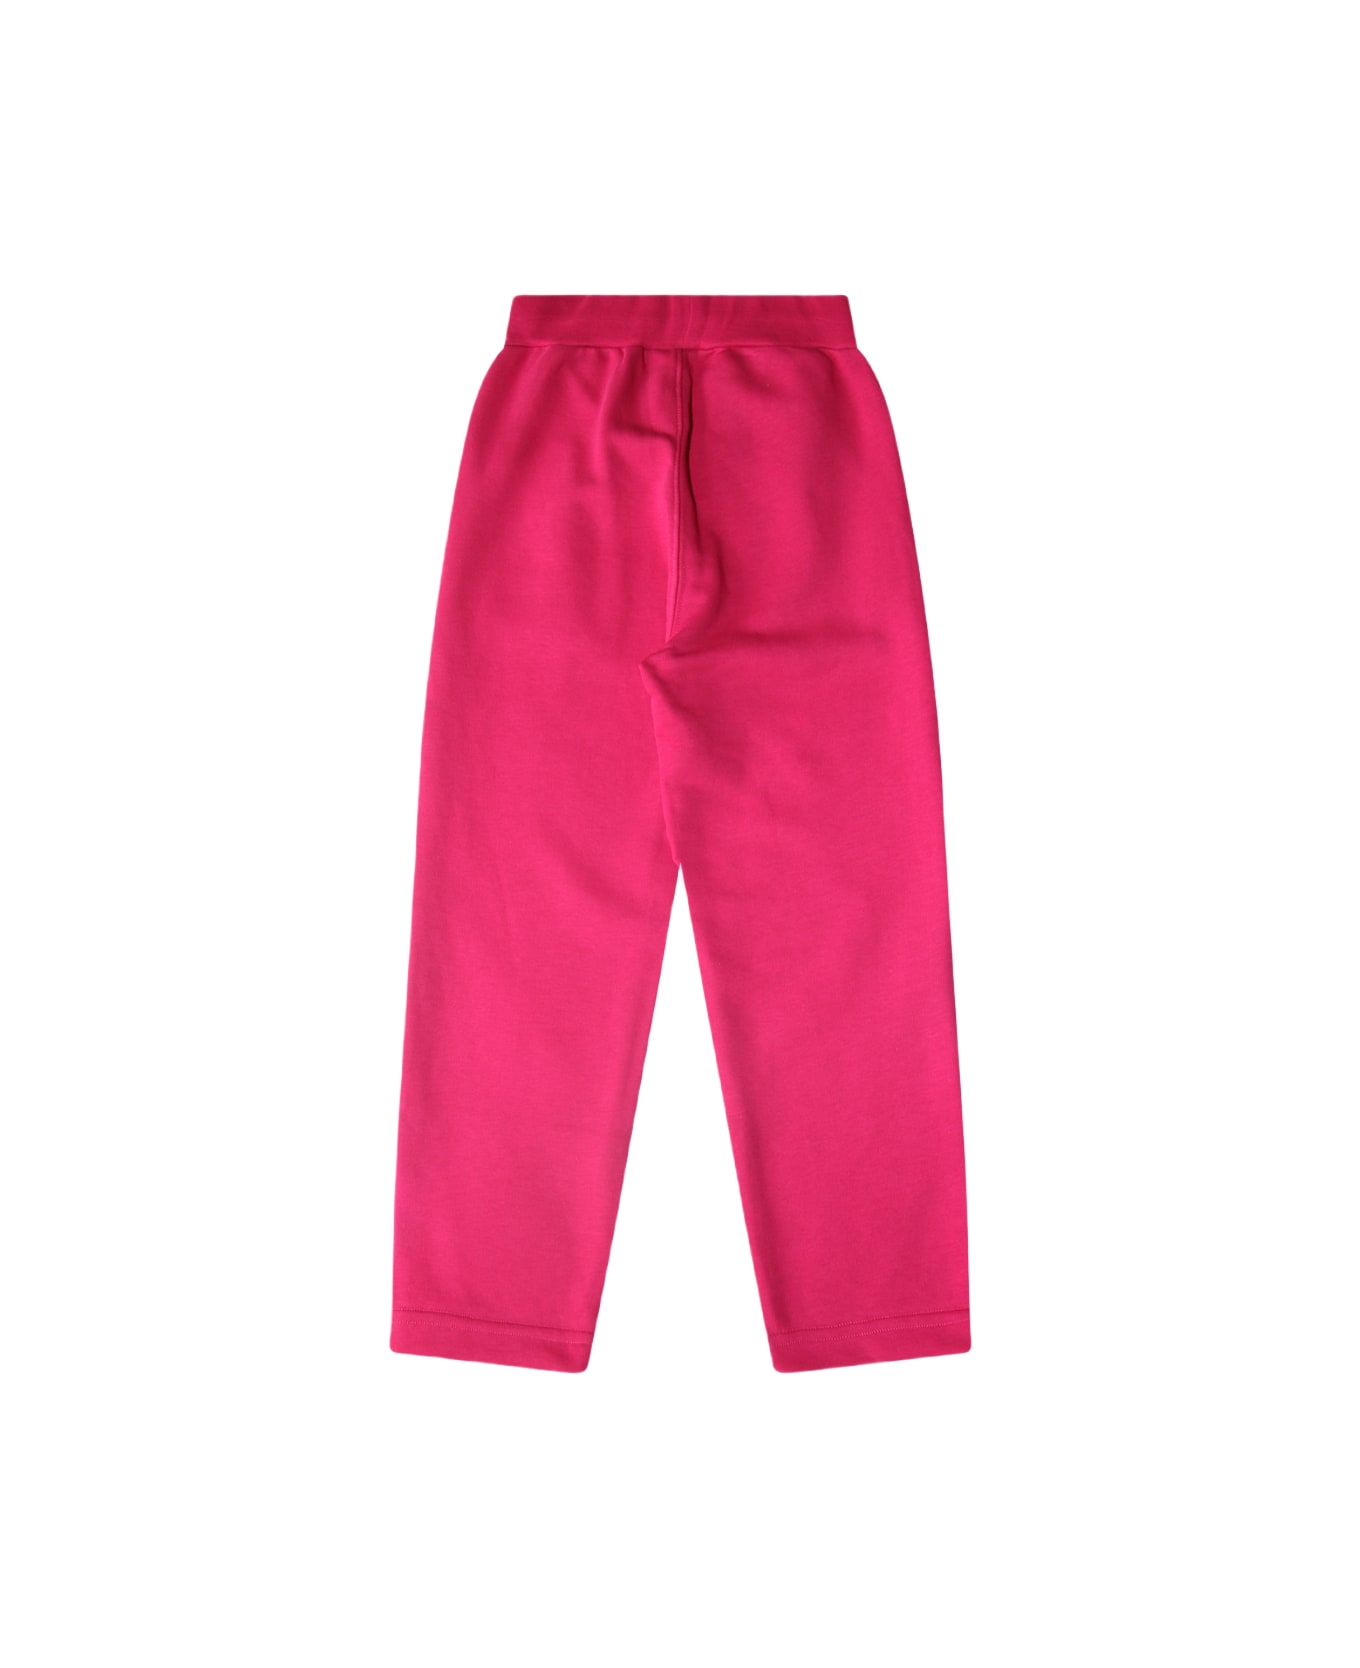 Monnalisa Pink Cotton Pants - Pink ボトムス